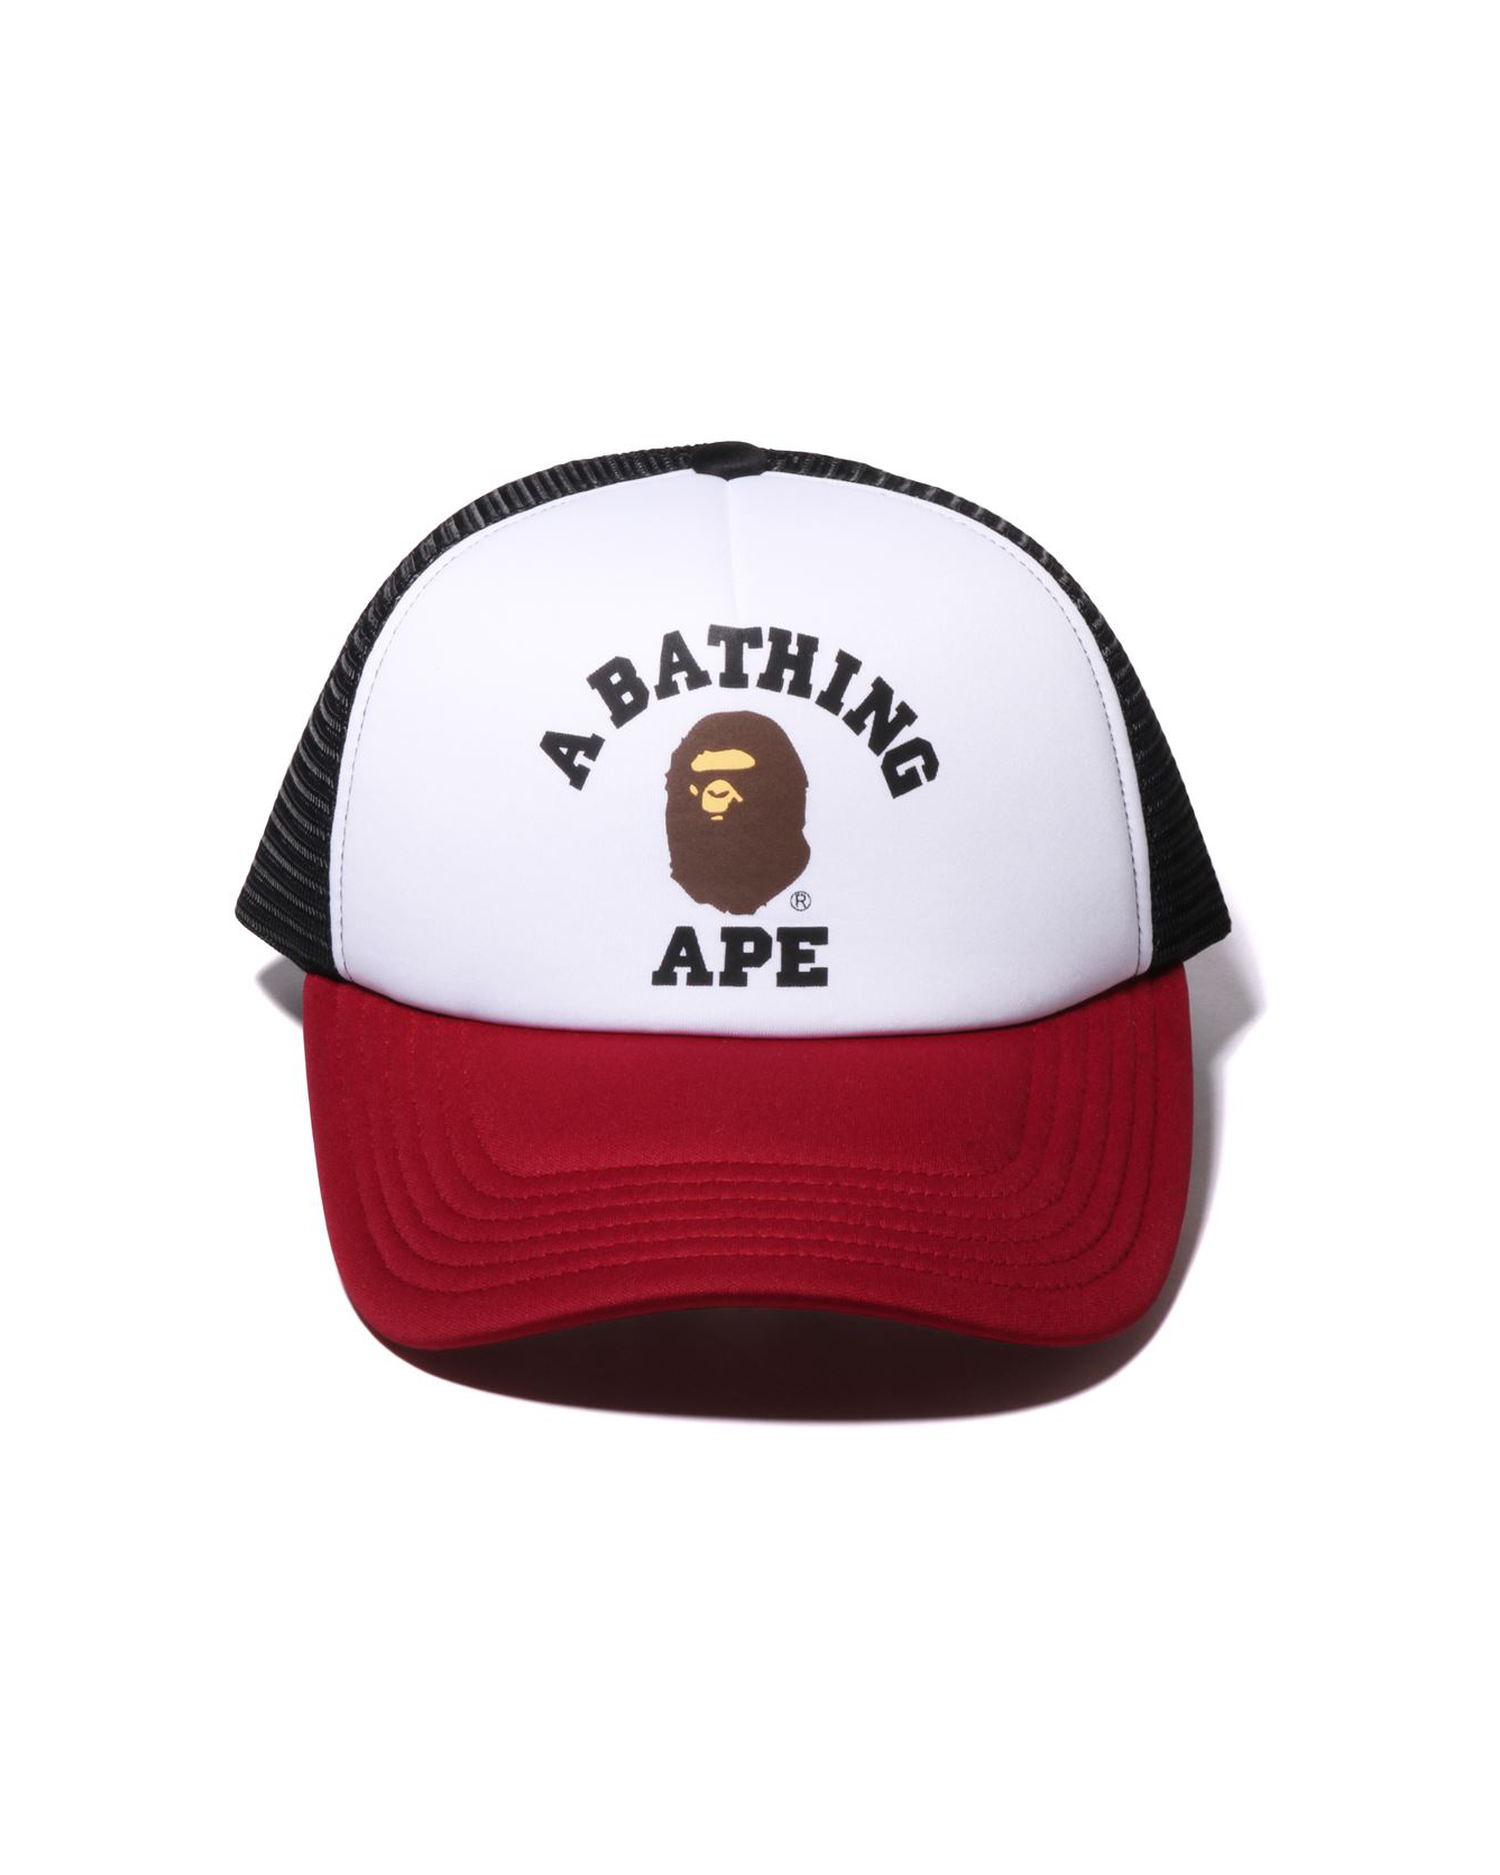 Hats | BAPE